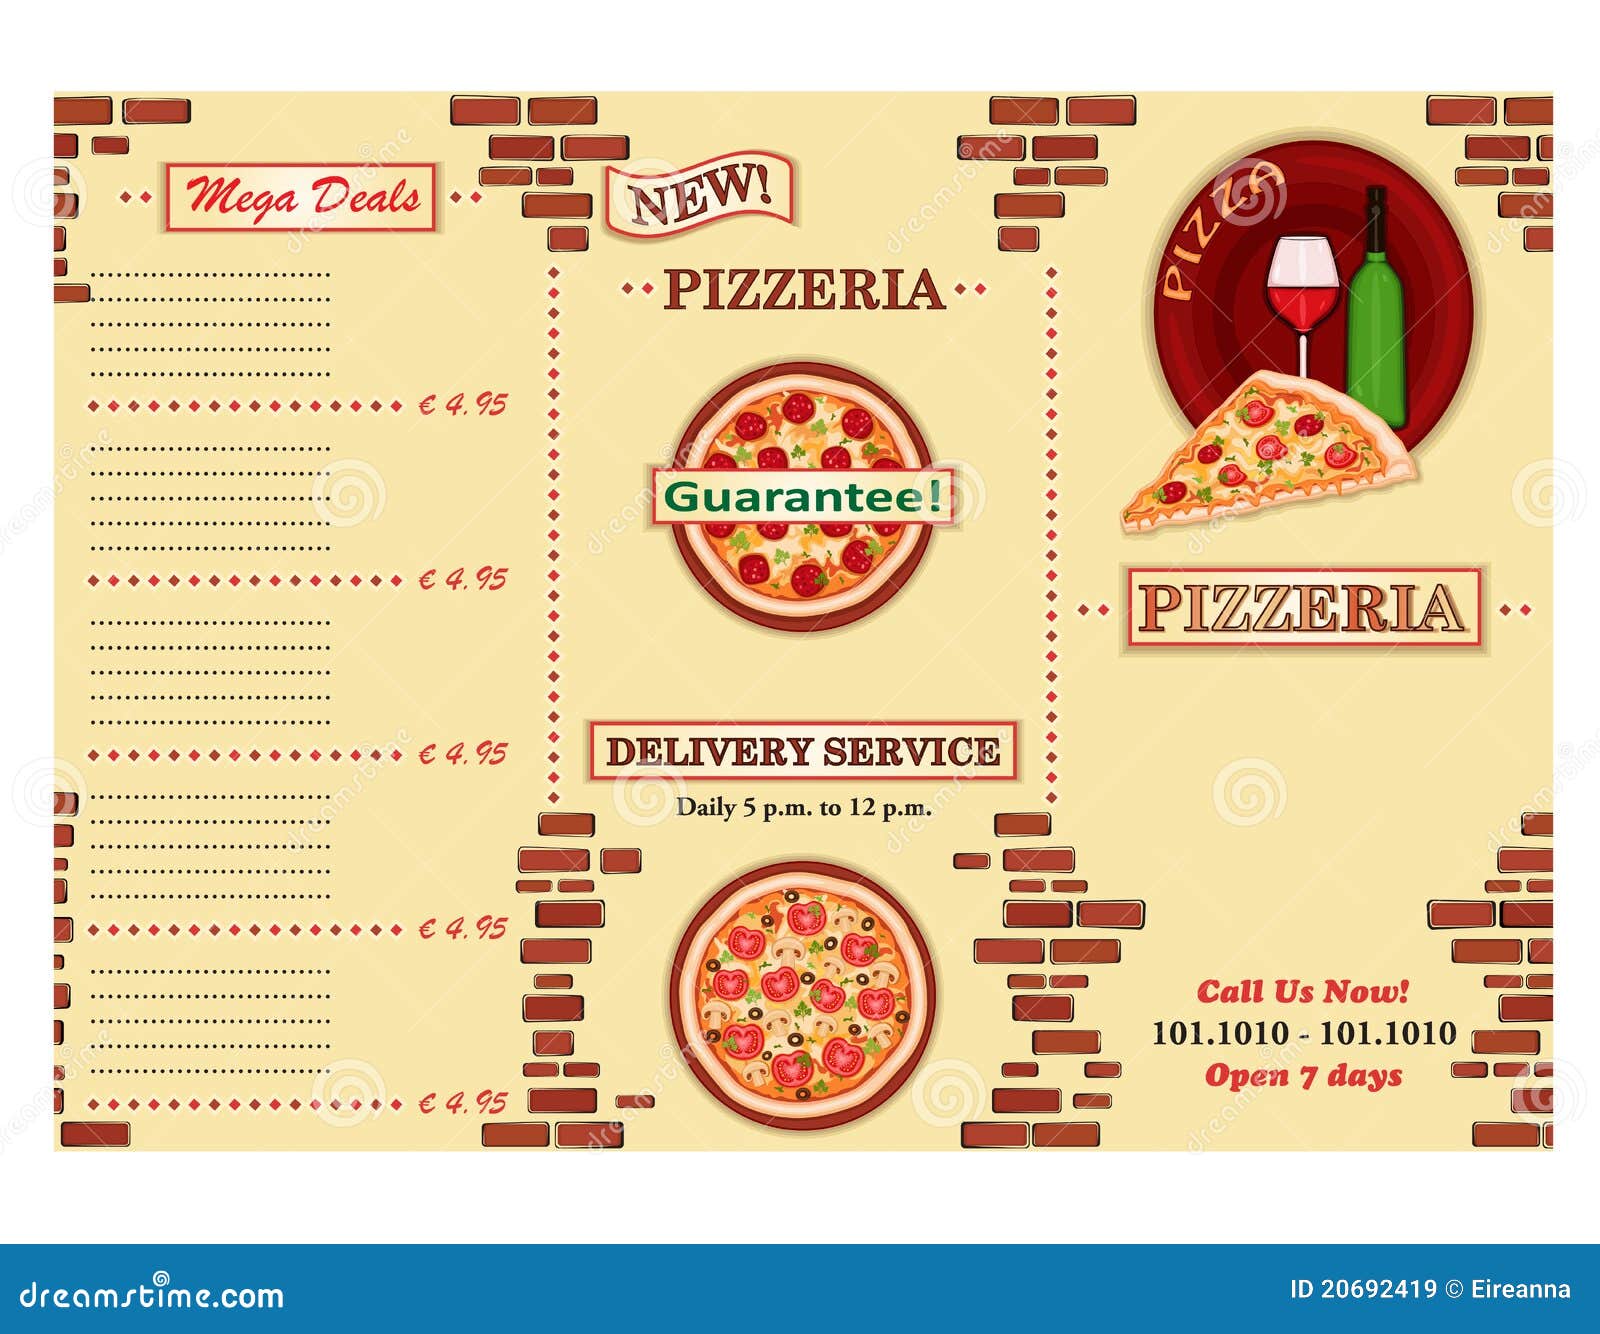 pizzeria restaurant leaflet